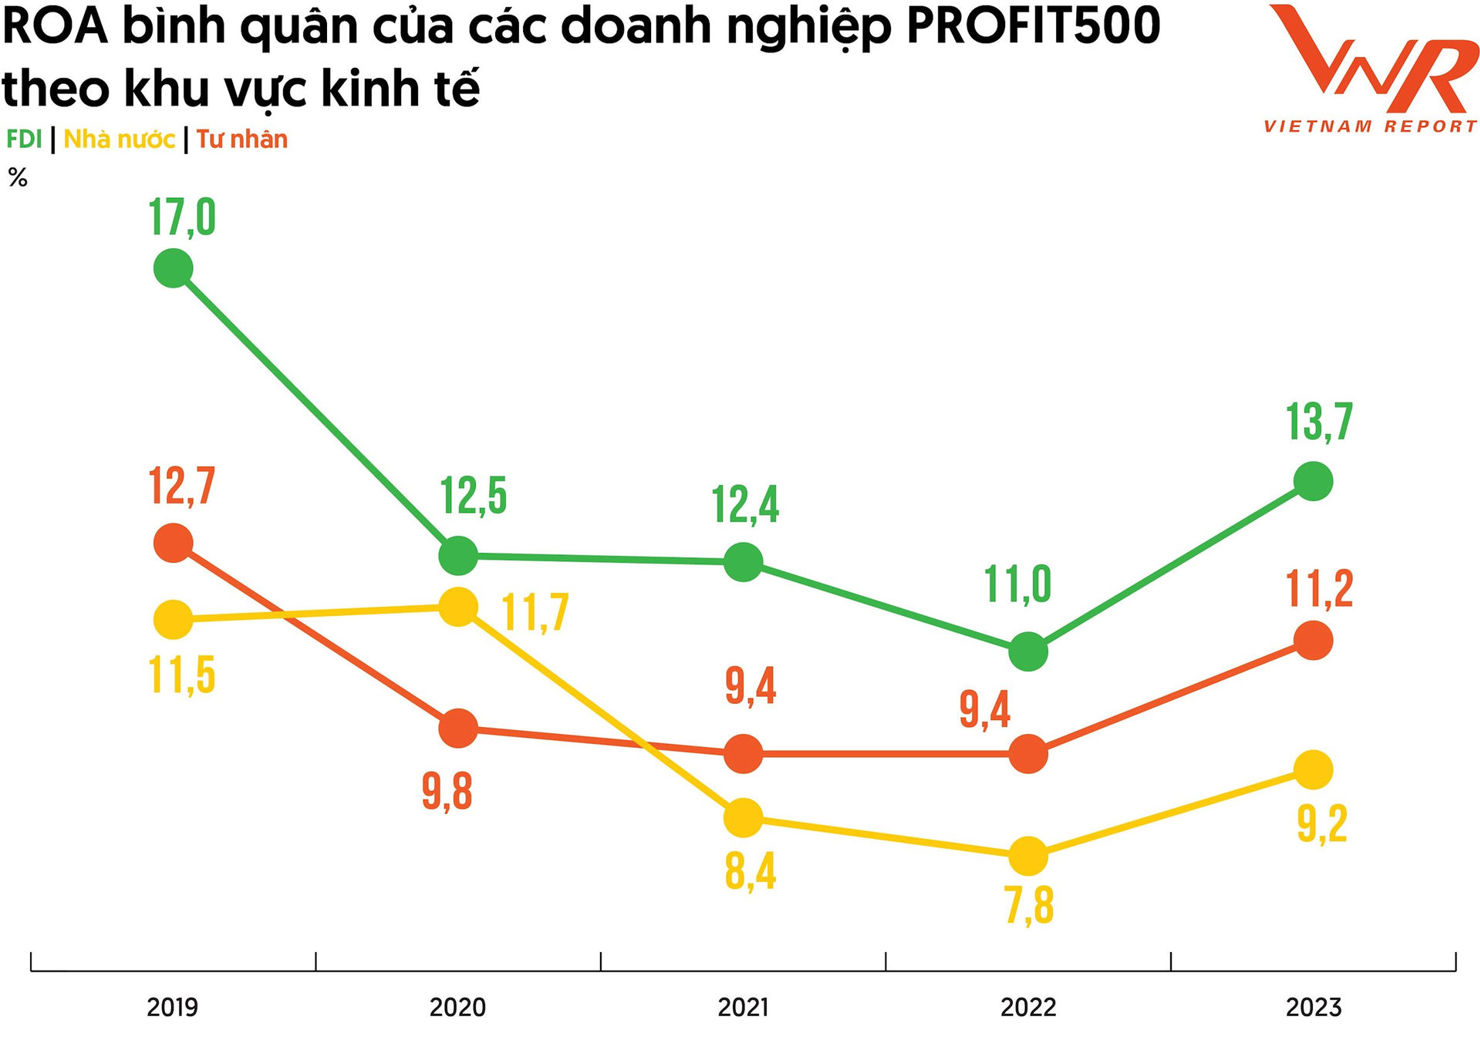 Thống k&ecirc; từ Bảng xếp hạng PROFIT500 giai đoạn 2019-2023. Nguồn:&nbsp;Vietnam Report